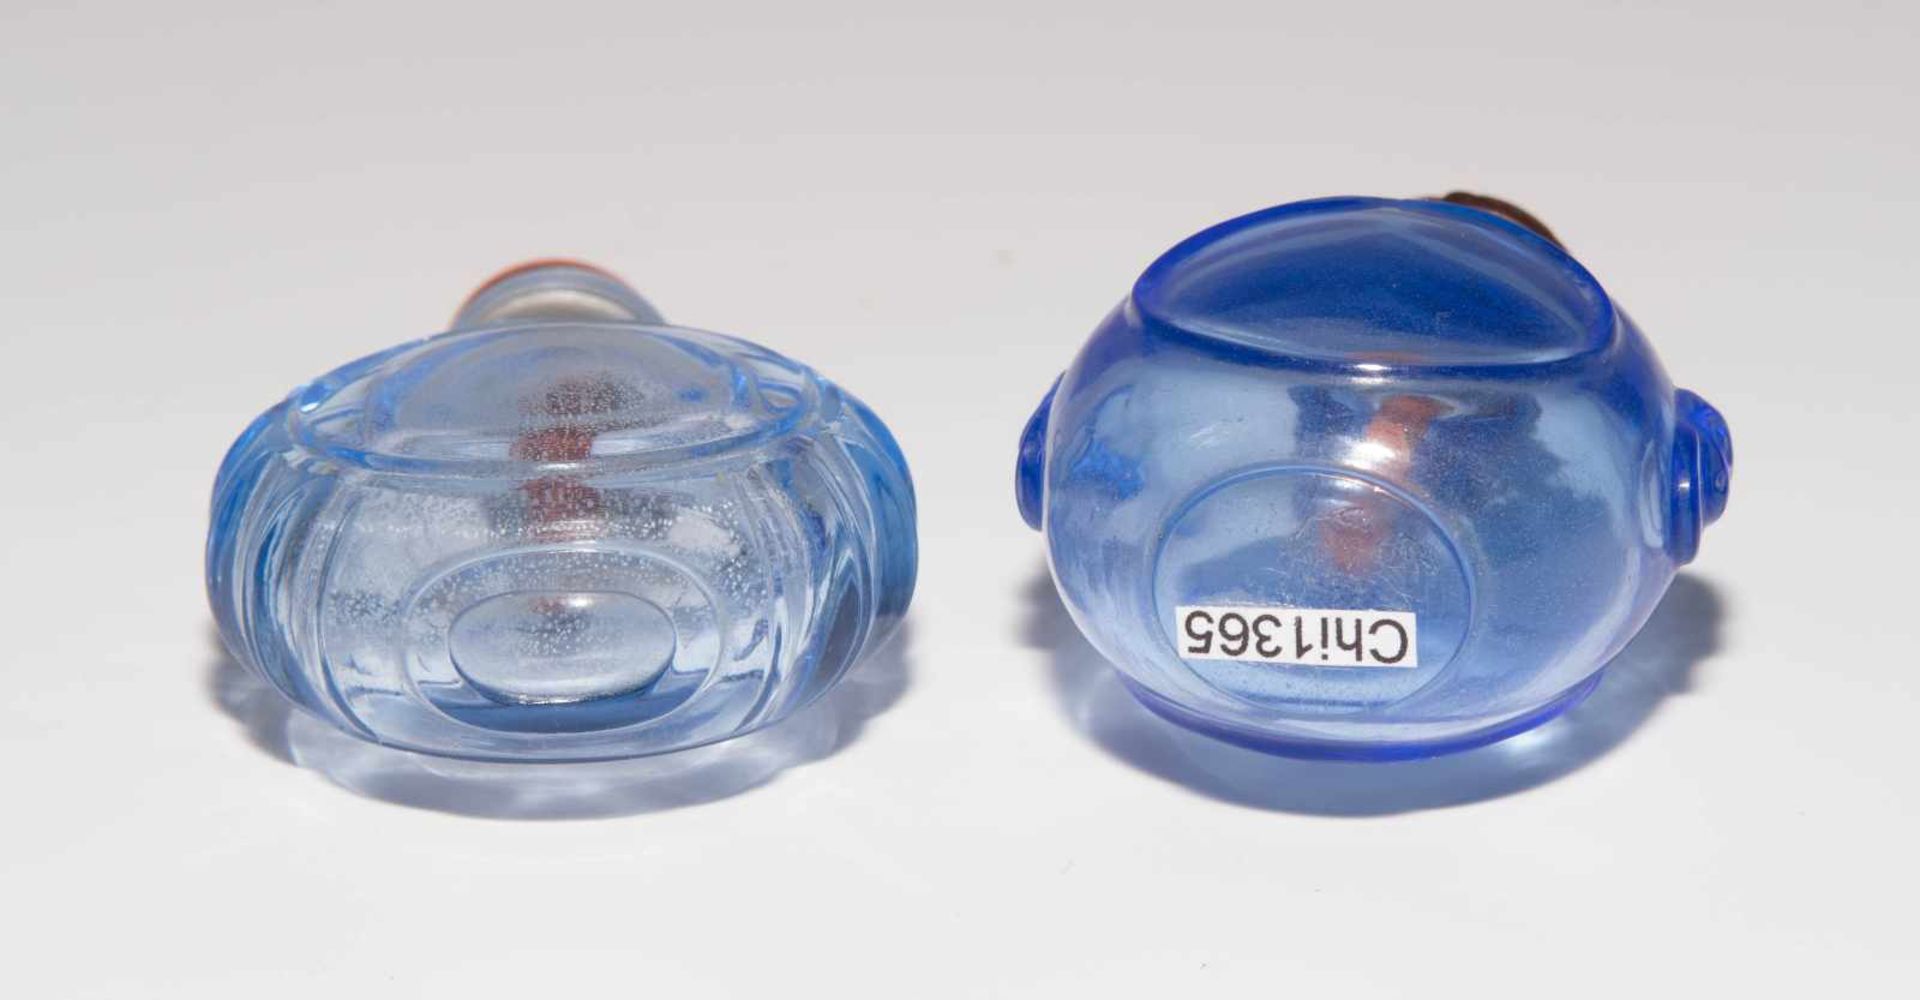 6 Glas Snuff BottlesChina. Hellblaues, transparentes Glas. Ein Doppel-Snuff Bottle, zwei mit - Bild 19 aus 22